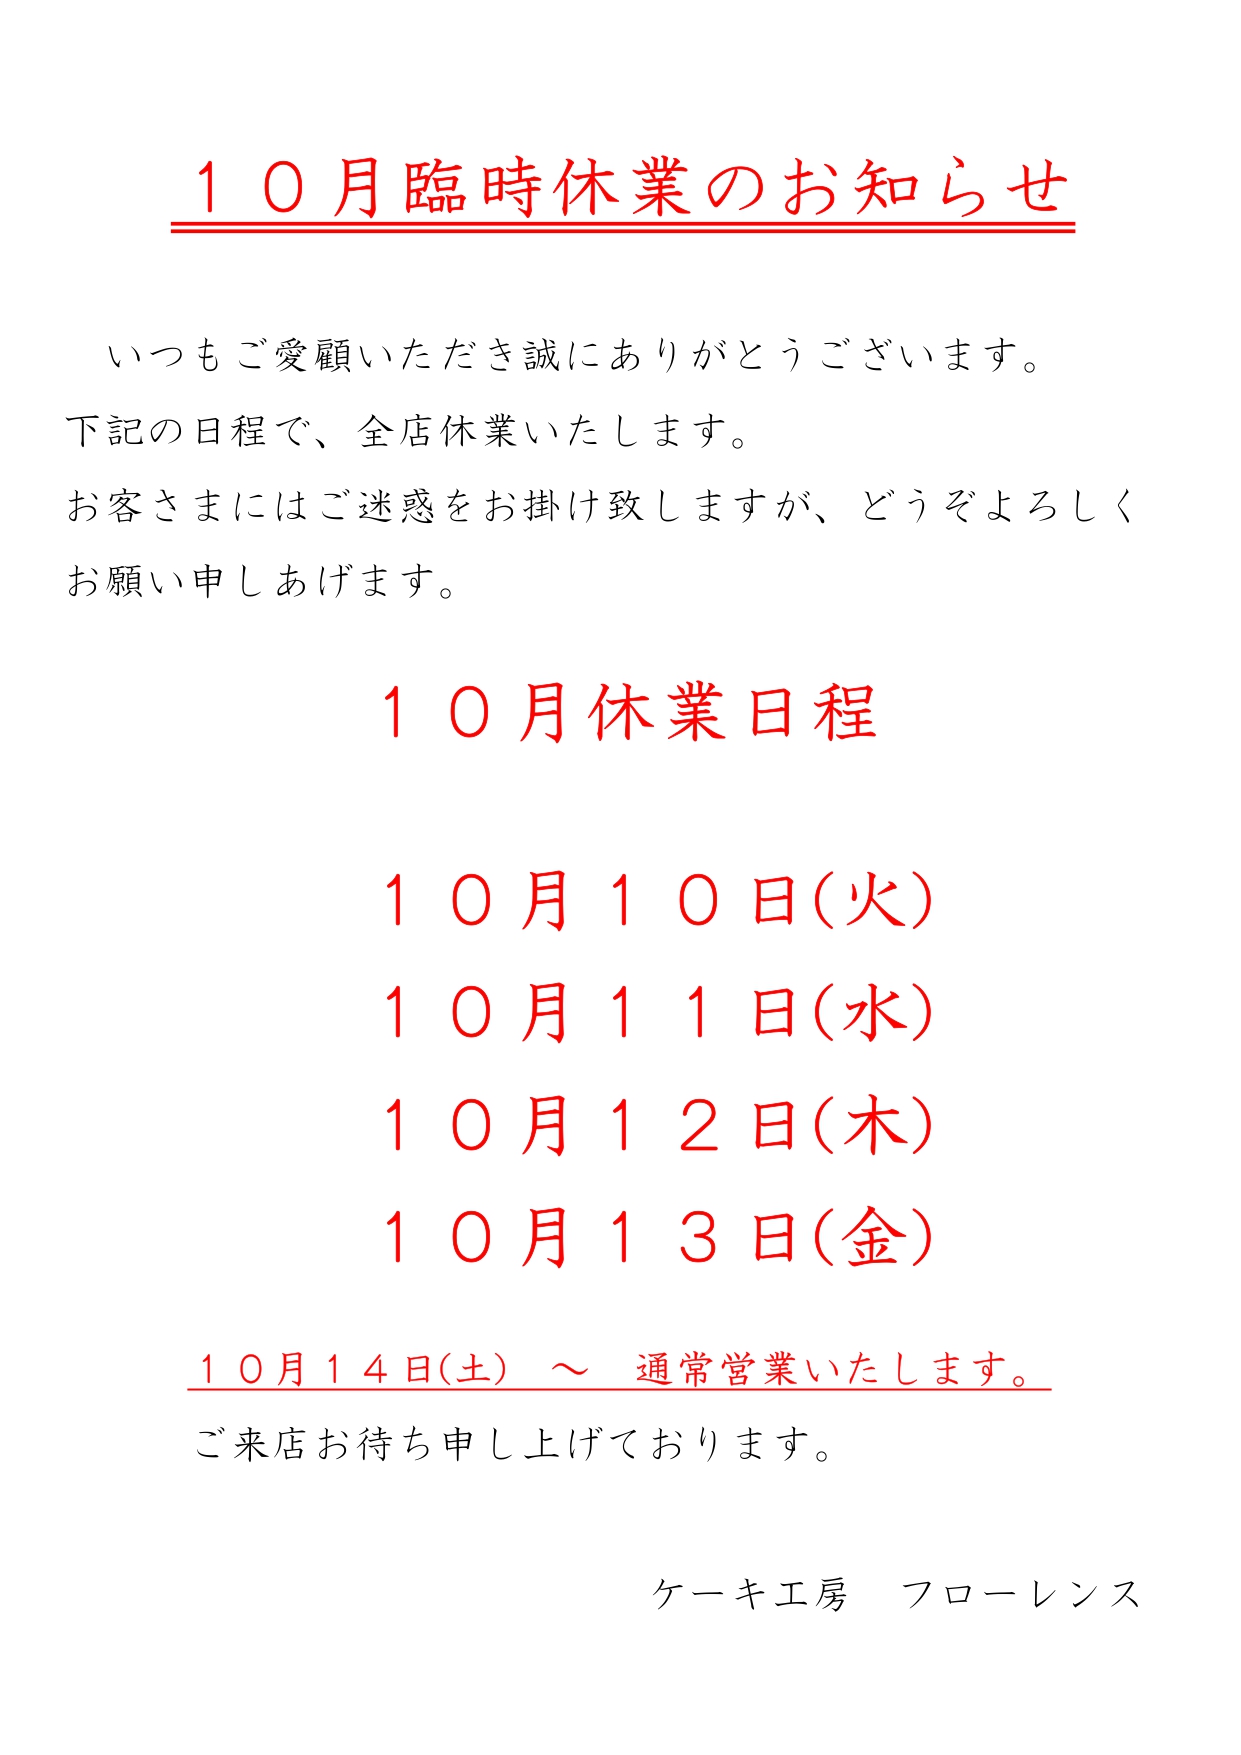 全店臨時休業のお知らせ 10/10(火)-10/13(金)